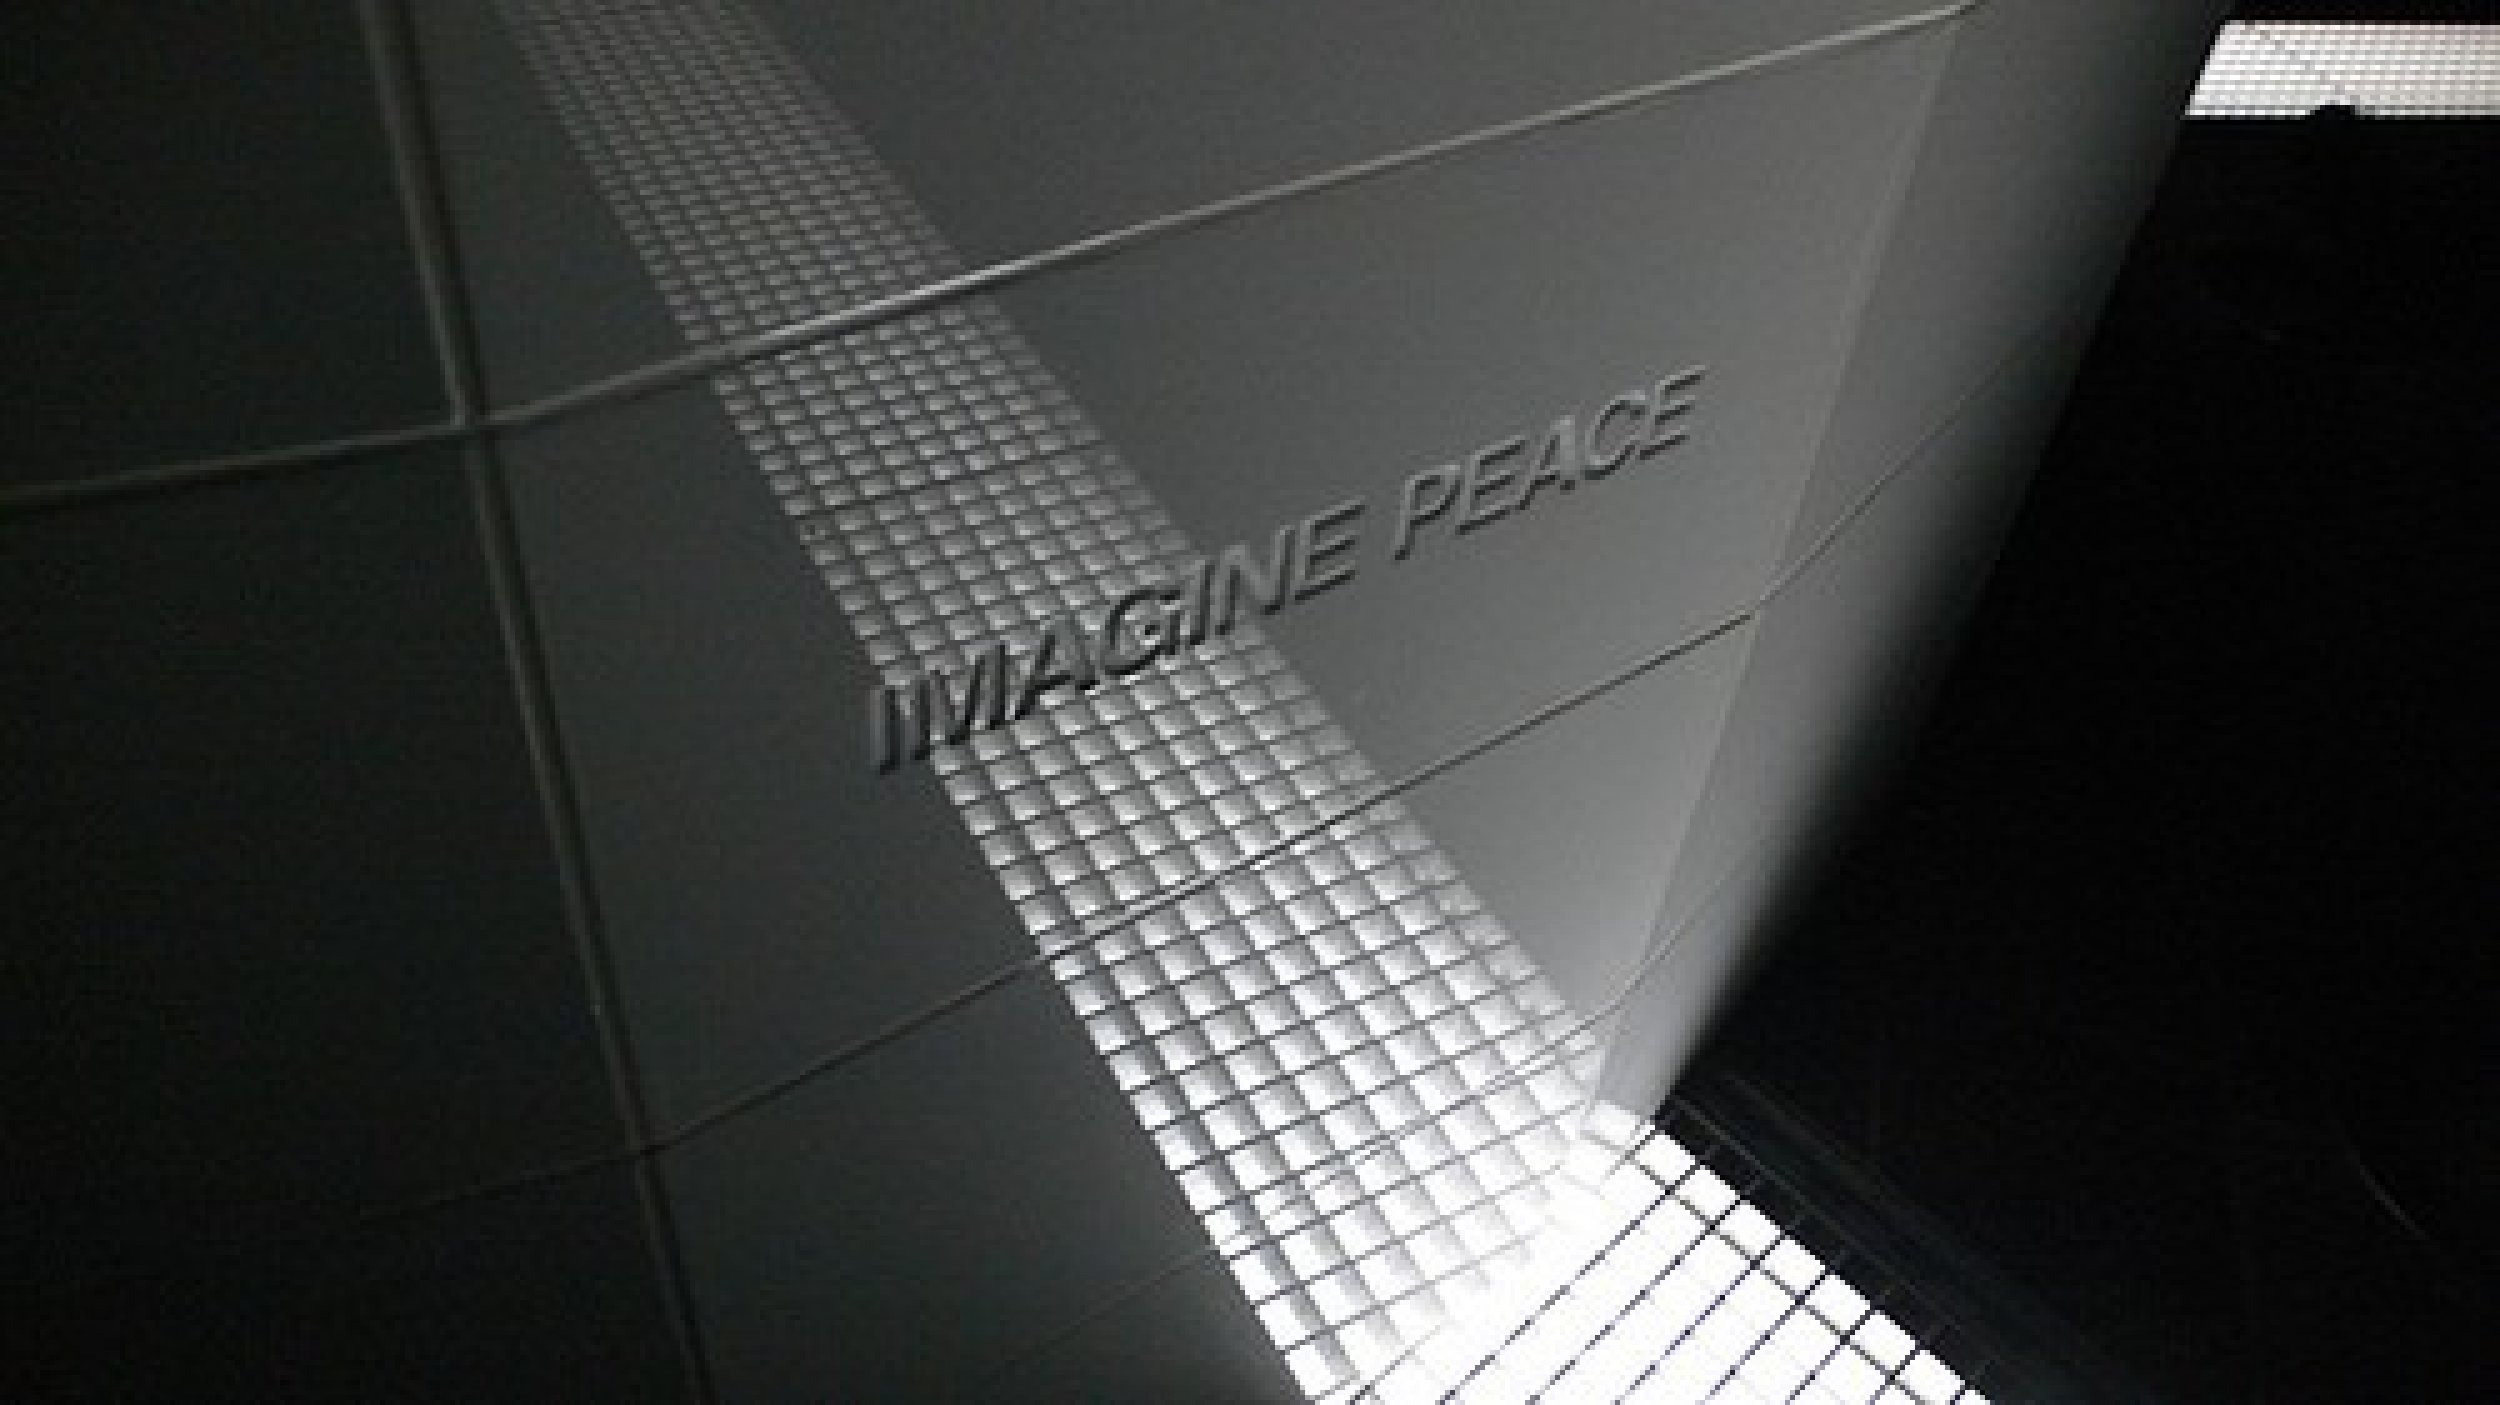 Imagine Peace Inscriptions